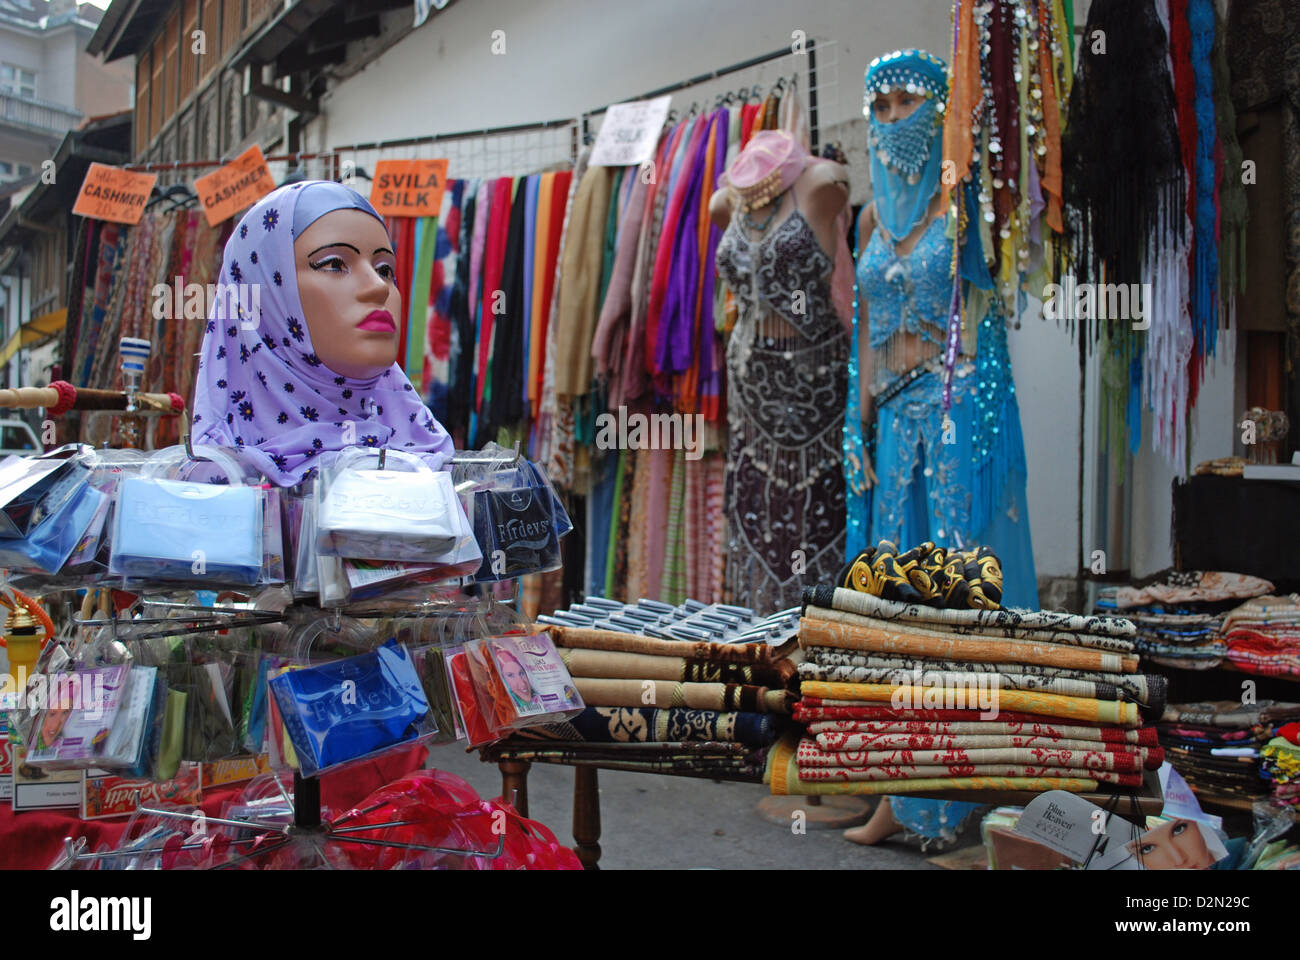 Muslim headscarves and hijabs for sale in Baščaršija, Old town in Sarajevo Stock Photo